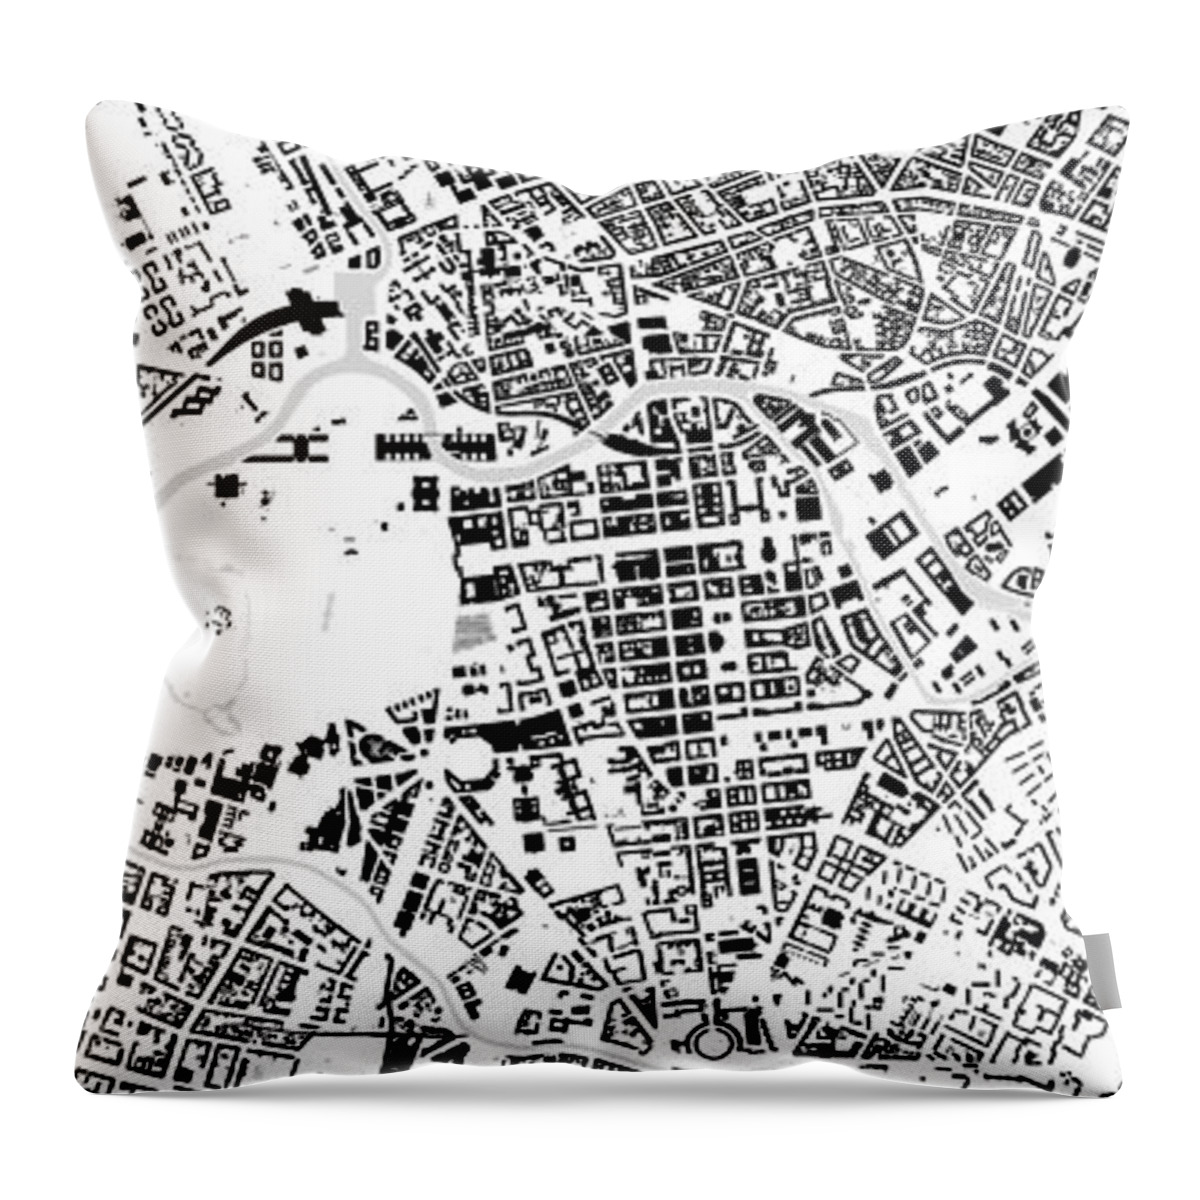 City Throw Pillow featuring the digital art Berlin building map by Christian Pauschert